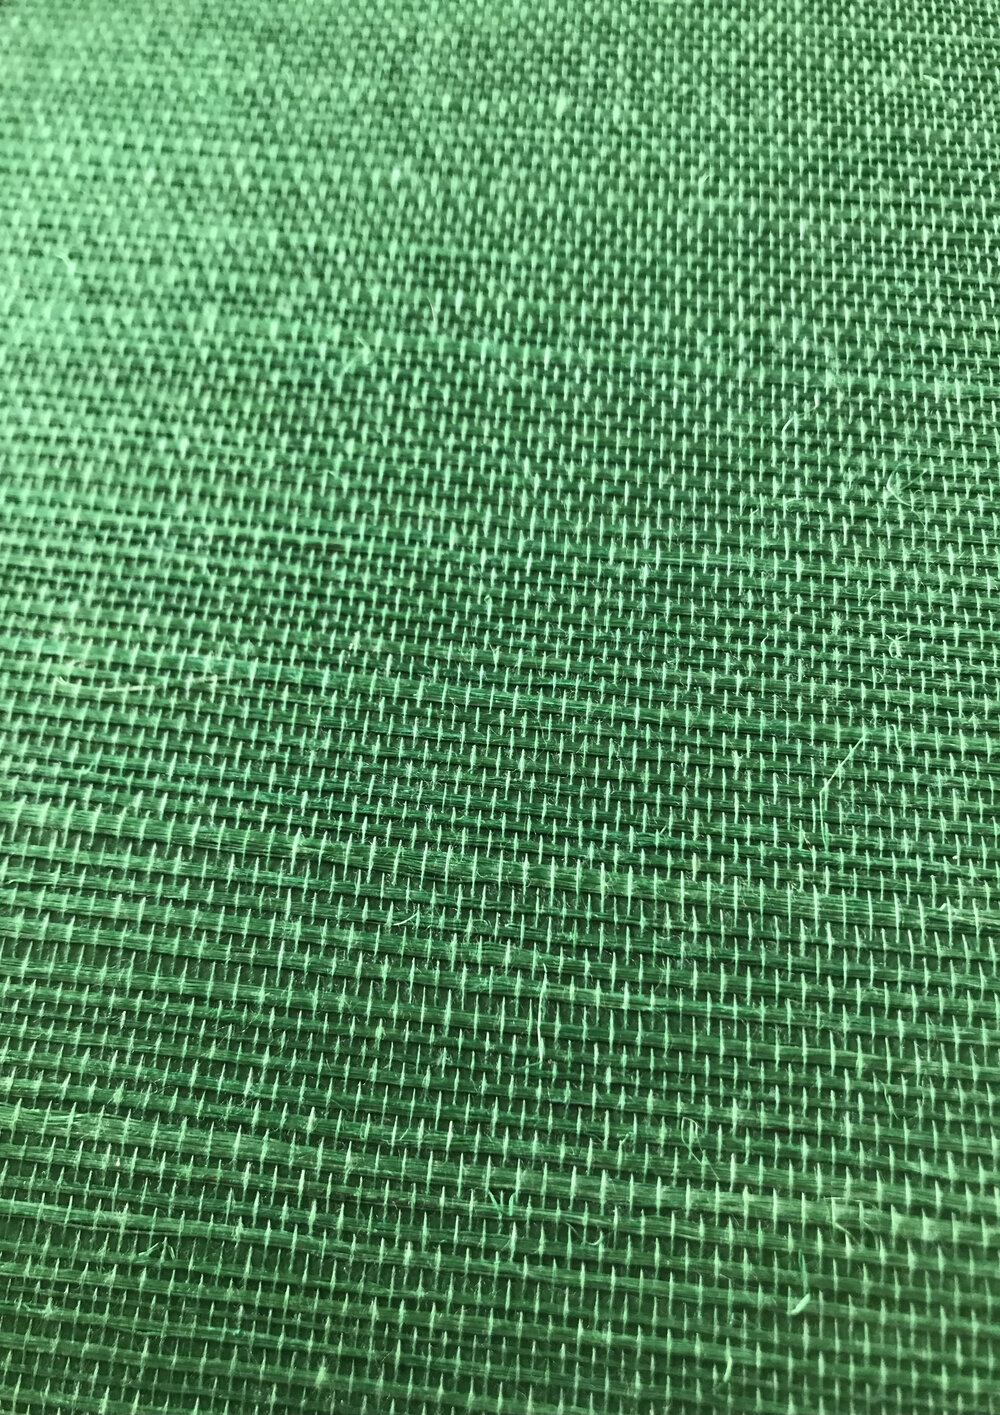 Kanoko Grasscloth Wallpaper - Emerald - by Osborne & Little